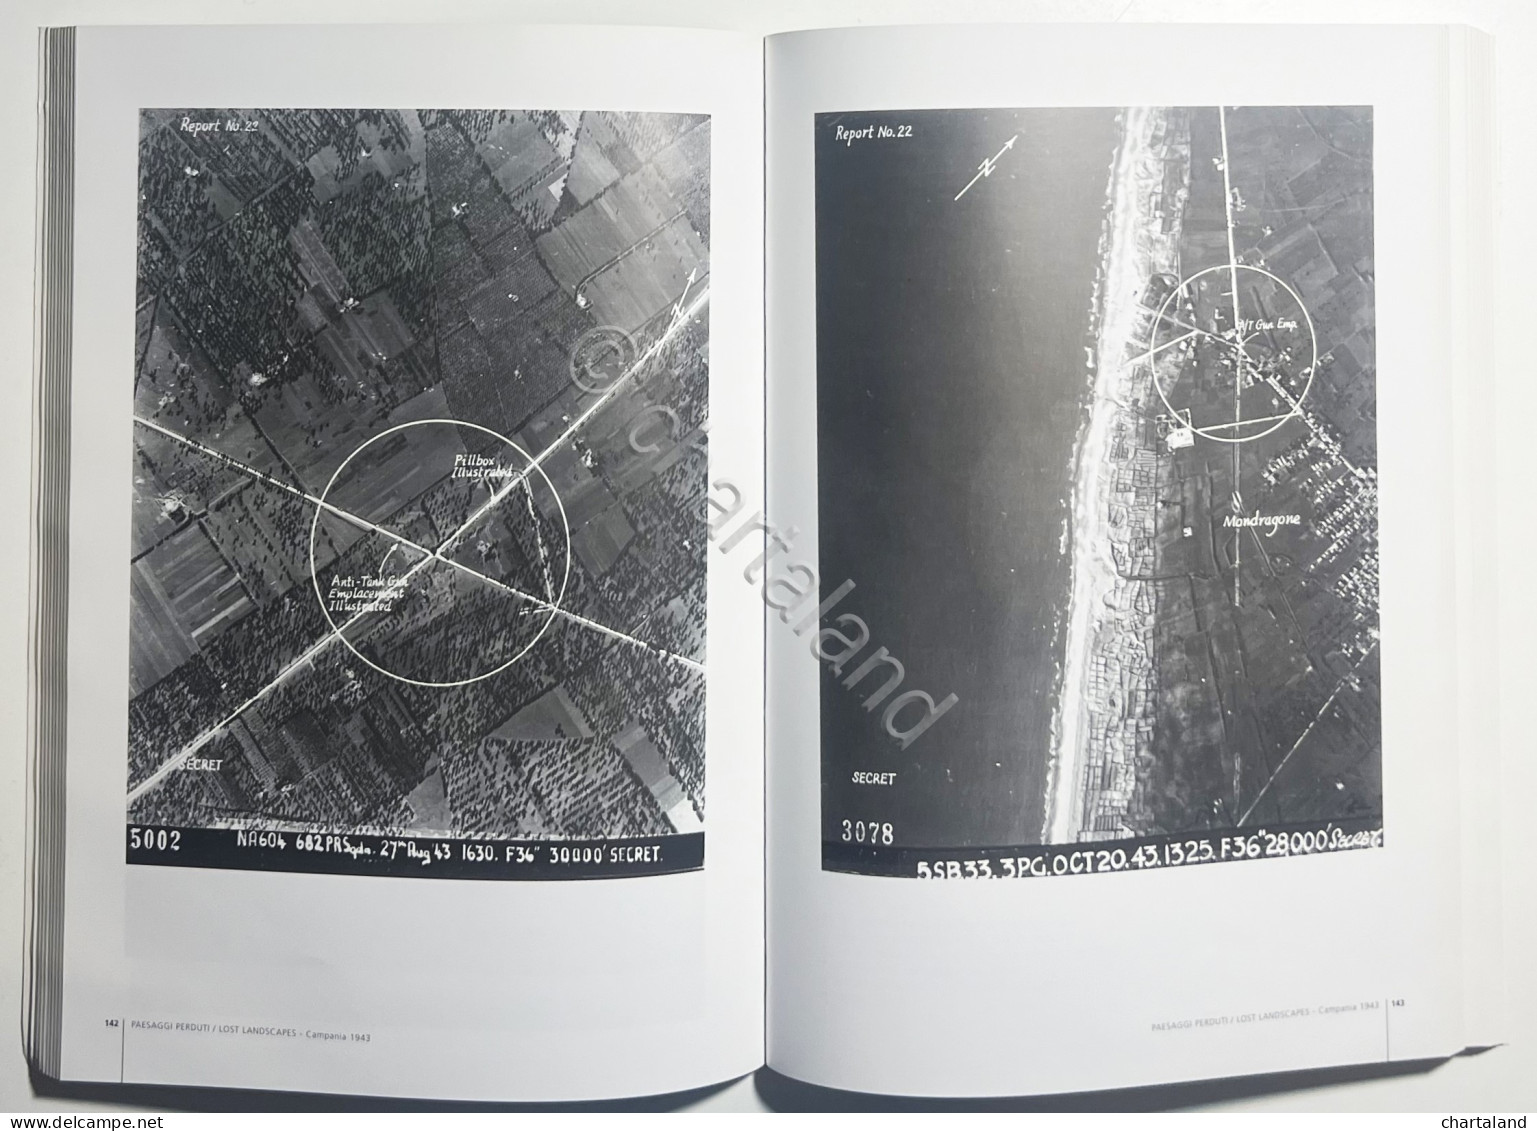 S. Pocock - Paesaggi Perduti / Lost Landscapes: Campania 1943 - Ed. 2011 - Other & Unclassified